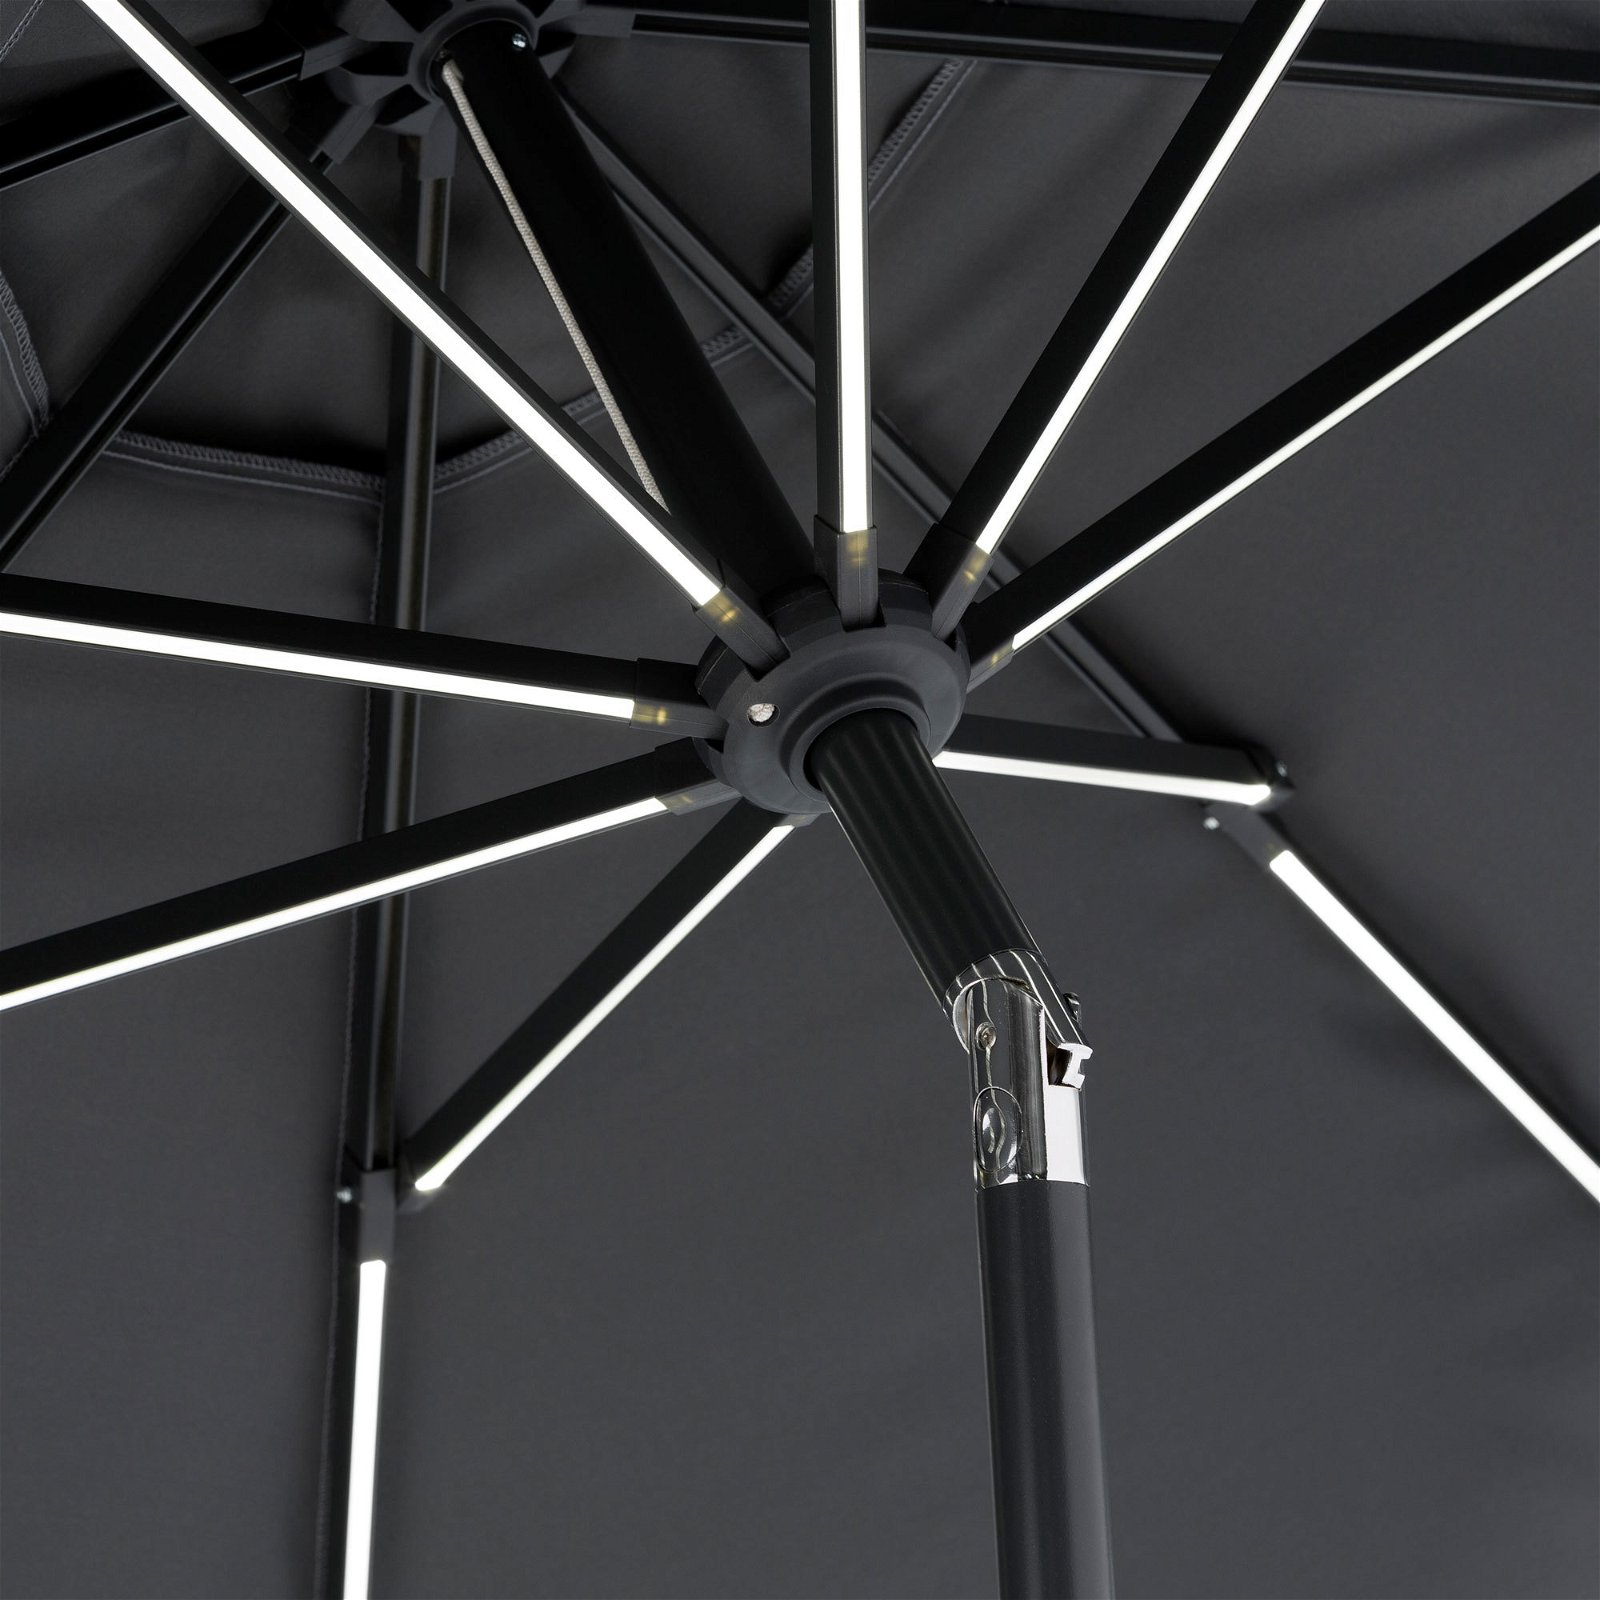 Schneider Sonnenschirm 'Blacklight' mit LEDs, anthrazit, Ø 270 cm